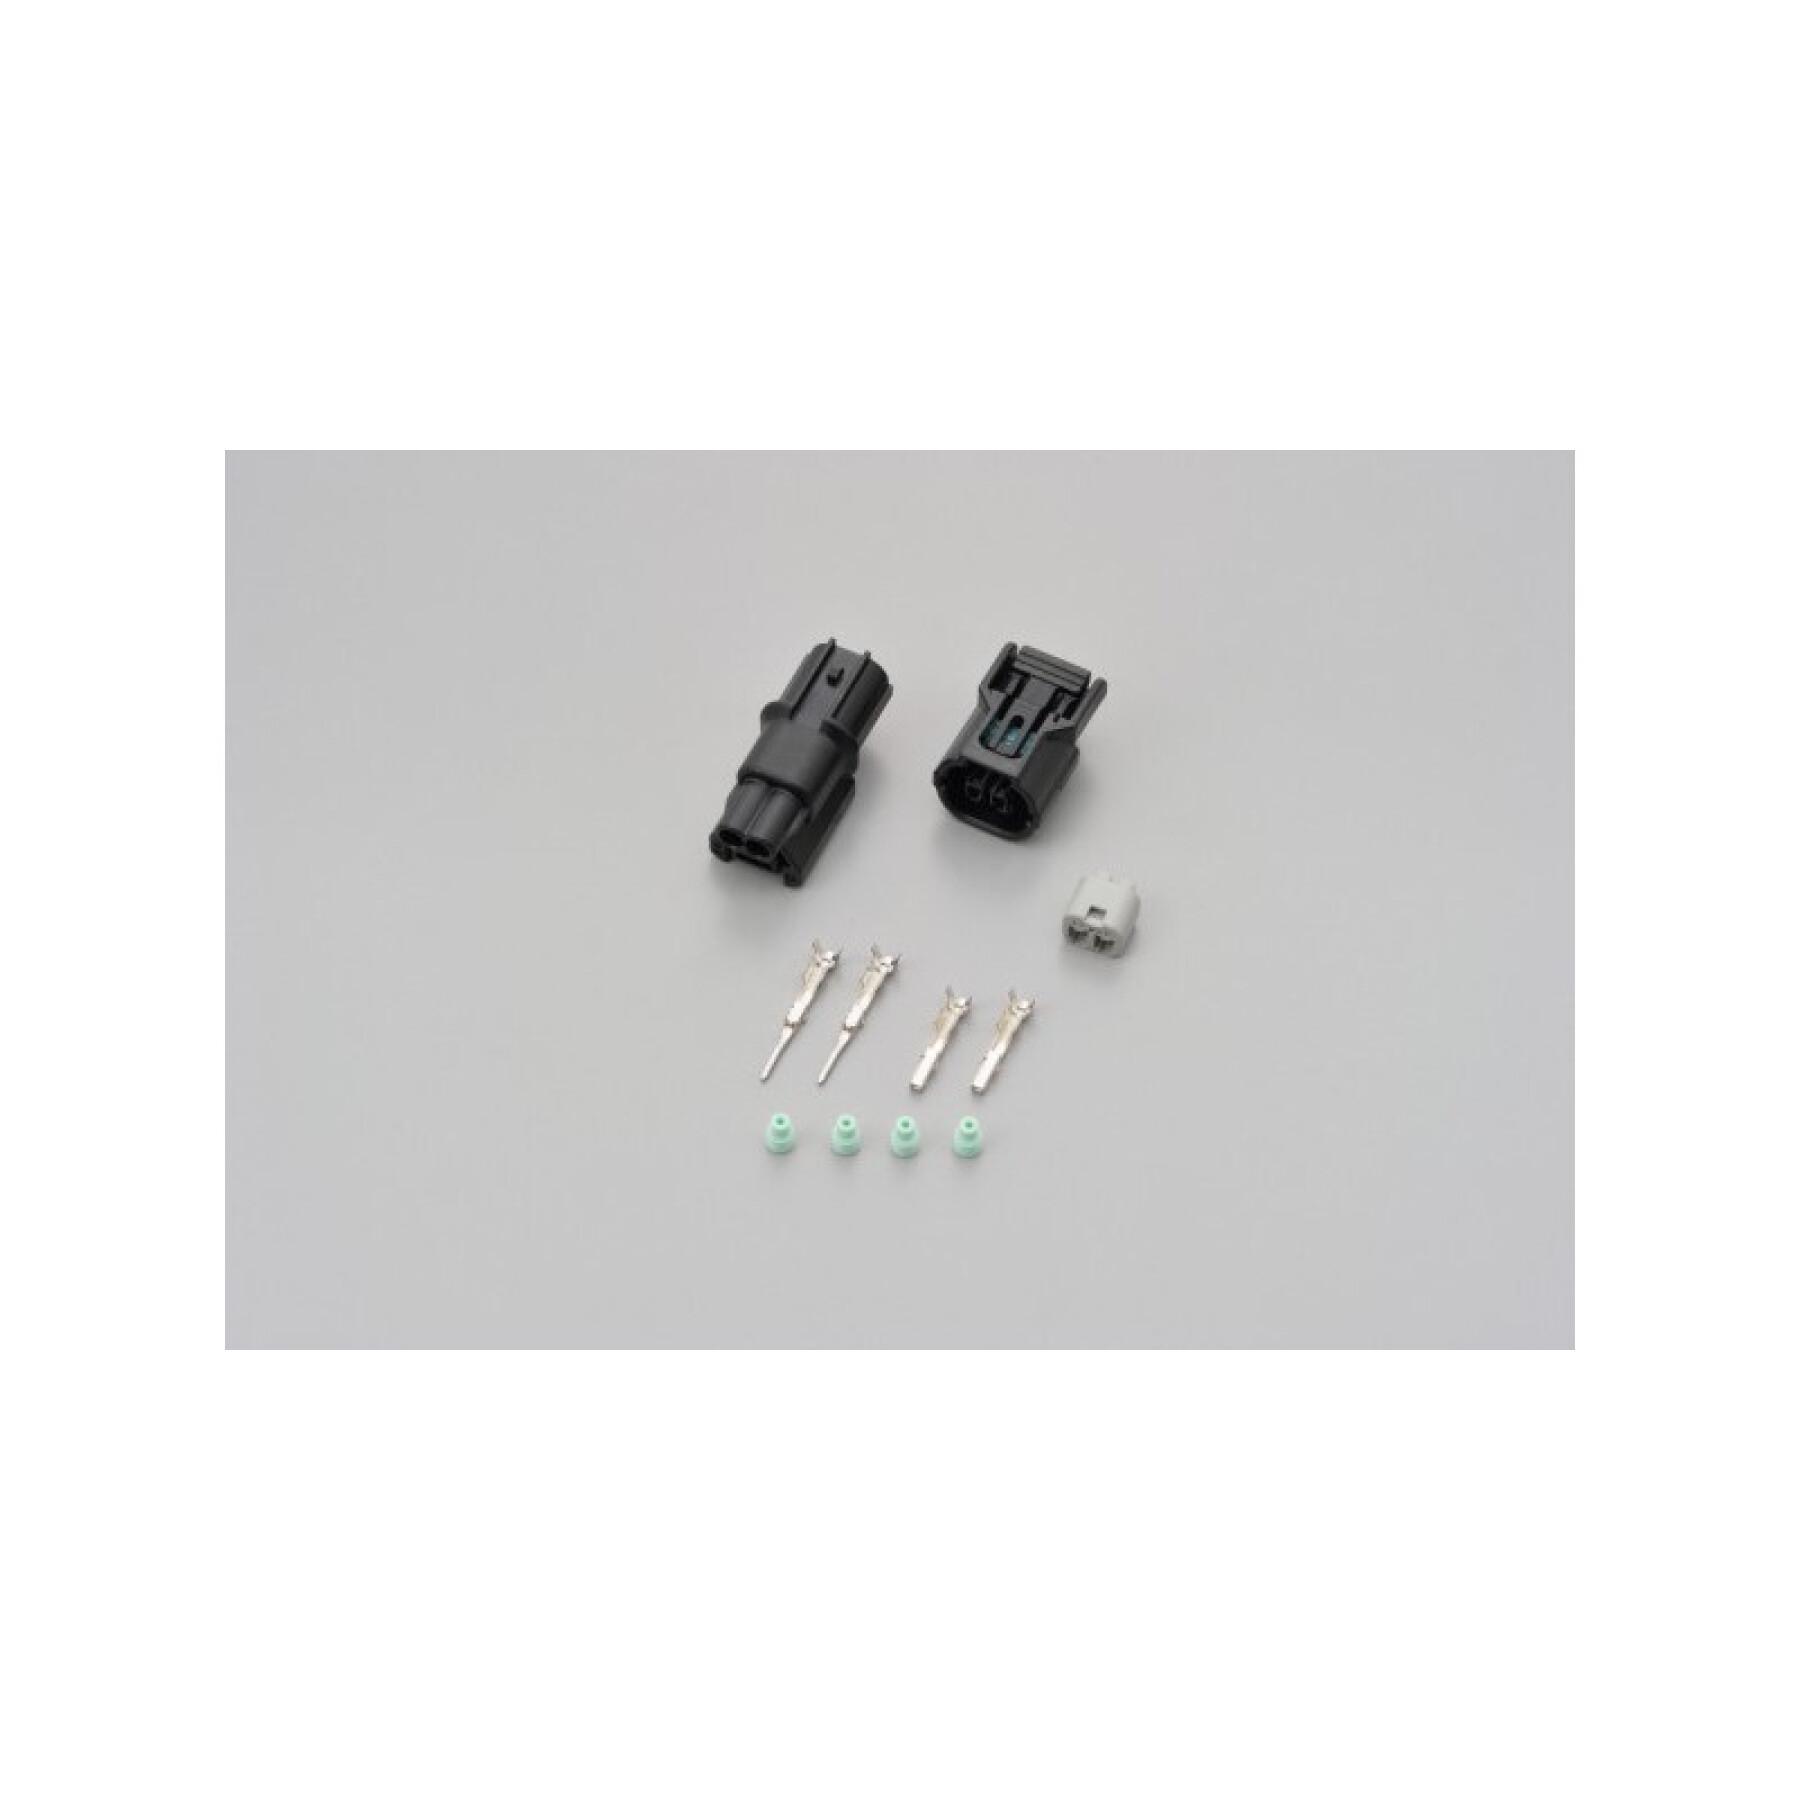 Conjunto de conectores de 2 portas para indicadores macho e fêmea Daytona 040 Kawasaki